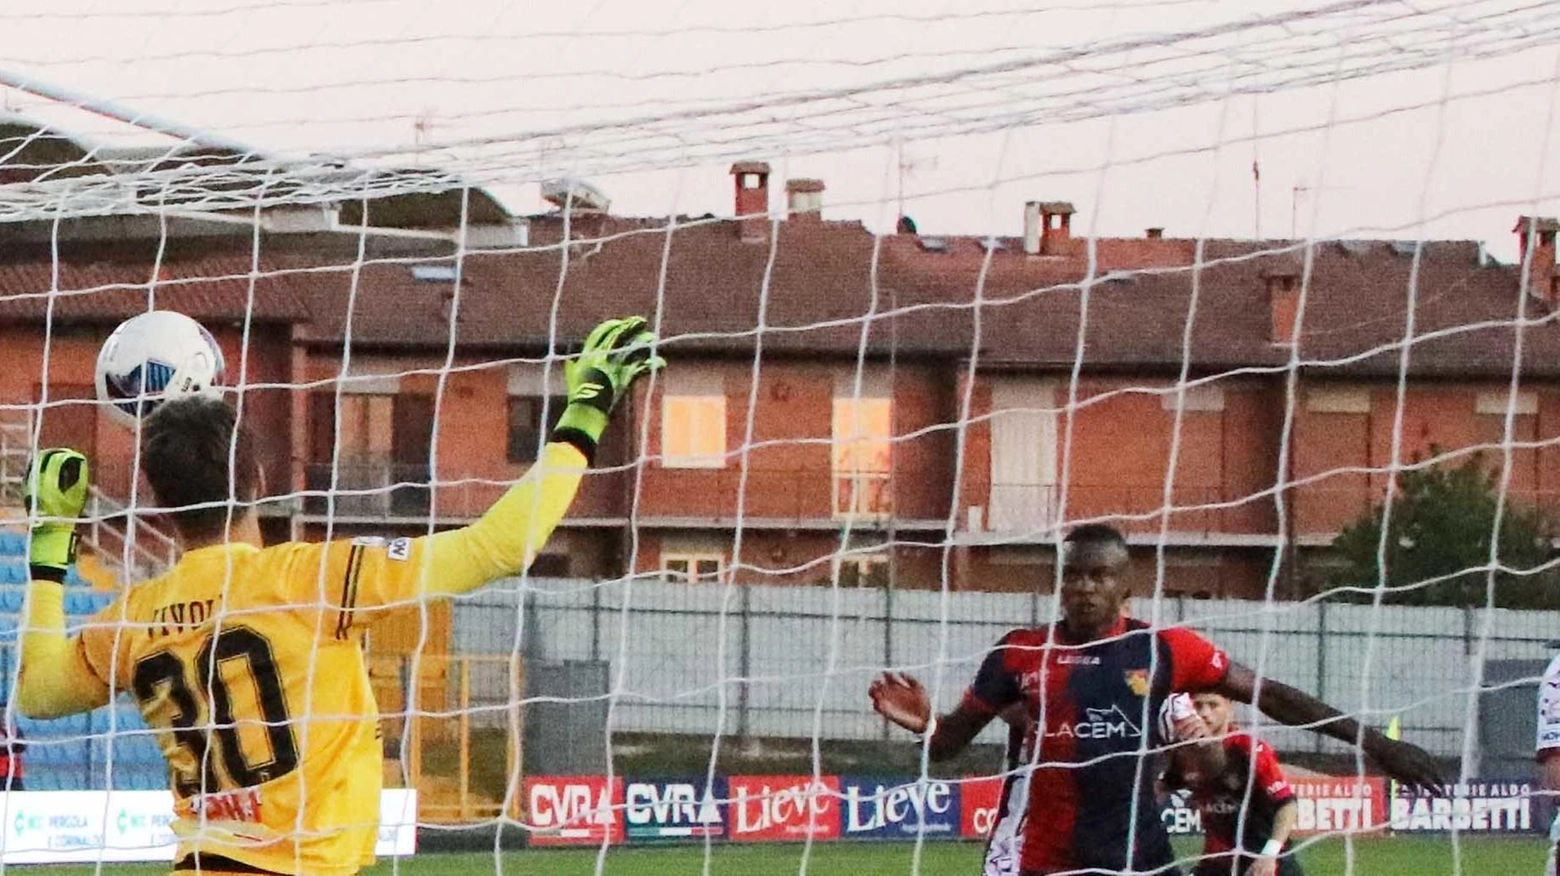 Nelle ultime due giornate del girone B di Serie C, il Gubbio cerca la vittoria per assicurarsi il quinto posto, mentre la Recanatese lotta per evitare i playout. Il destino incrociato le porta a seguire da vicino anche il match Pescara-Ancona.